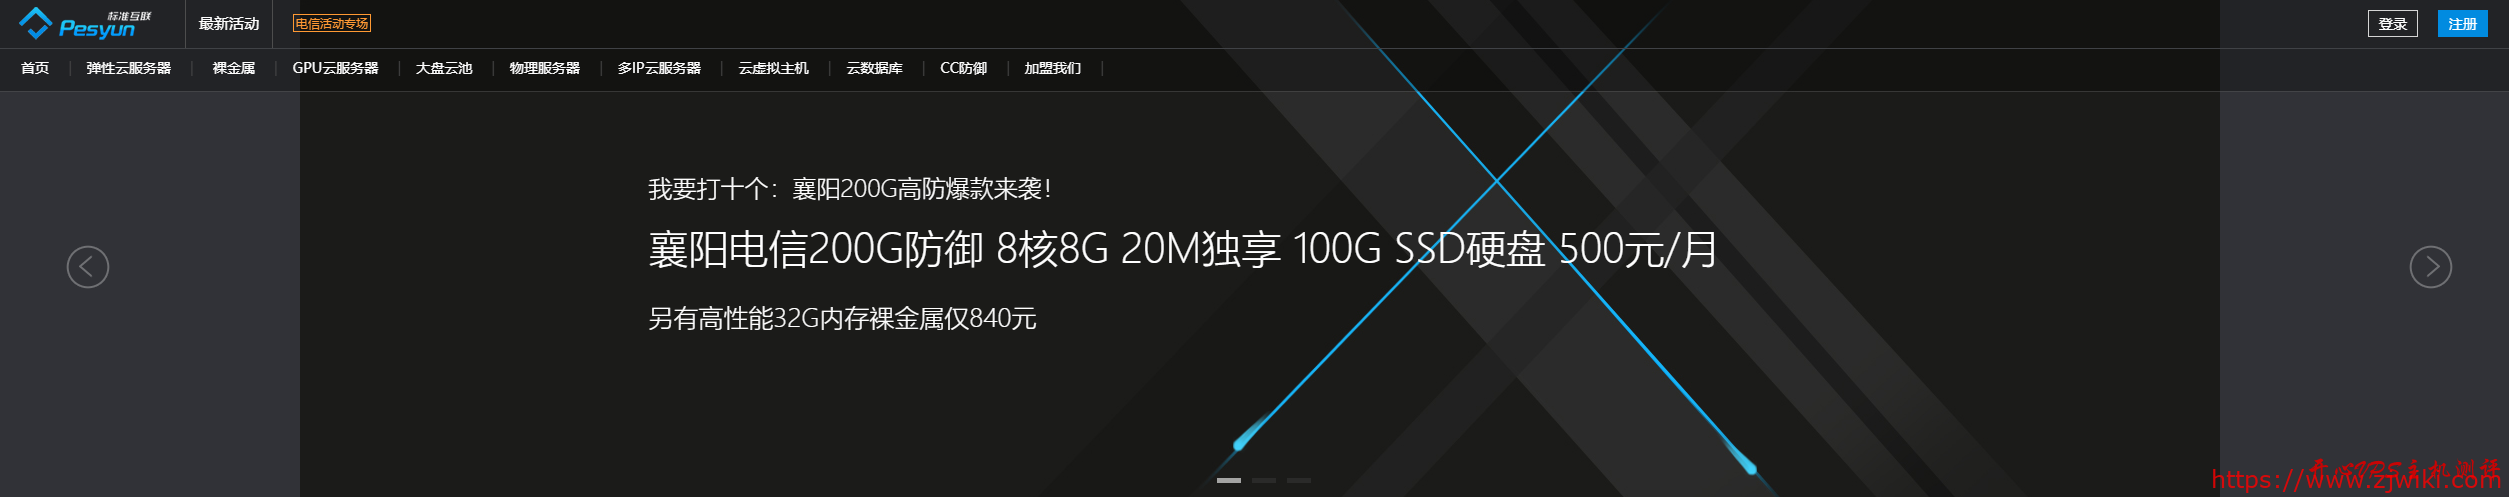 襄阳电信高防：8核8GB/100GB/20M(100G防御)=300元/8核8GB/100GB/20M(200G防御)=500元